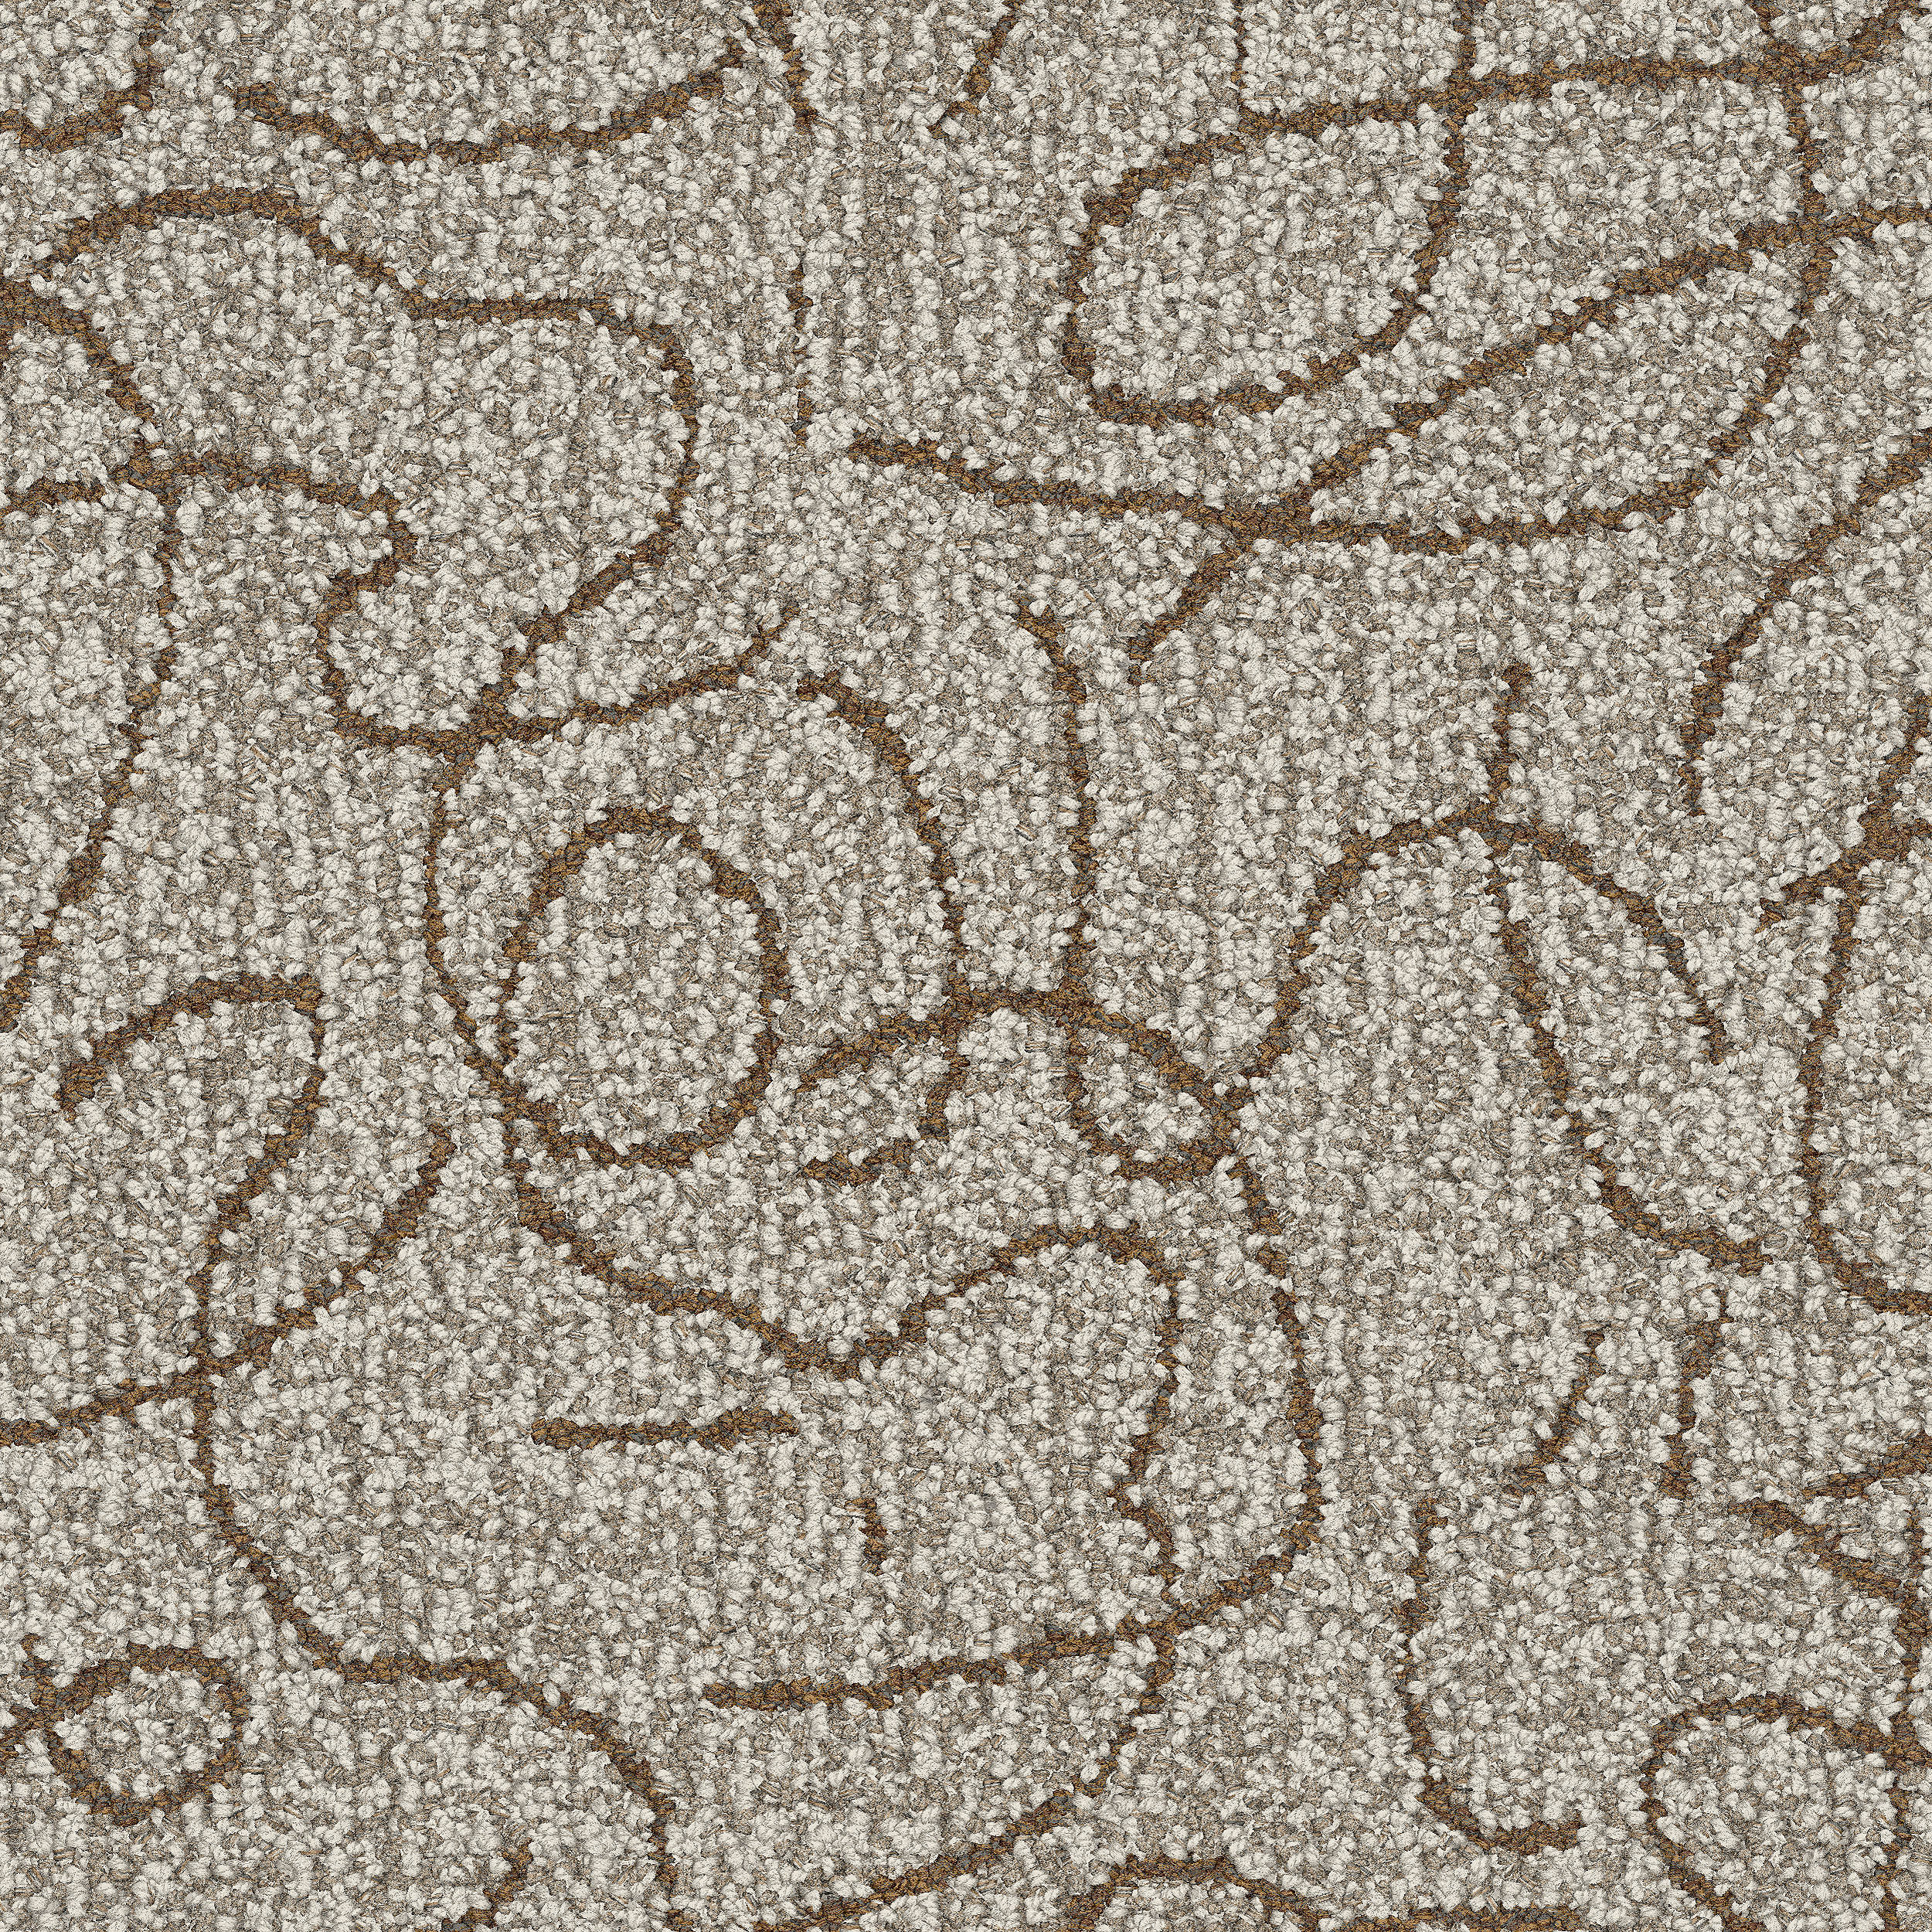 Unspooled carpet tile in Oatmeal número de imagen 4